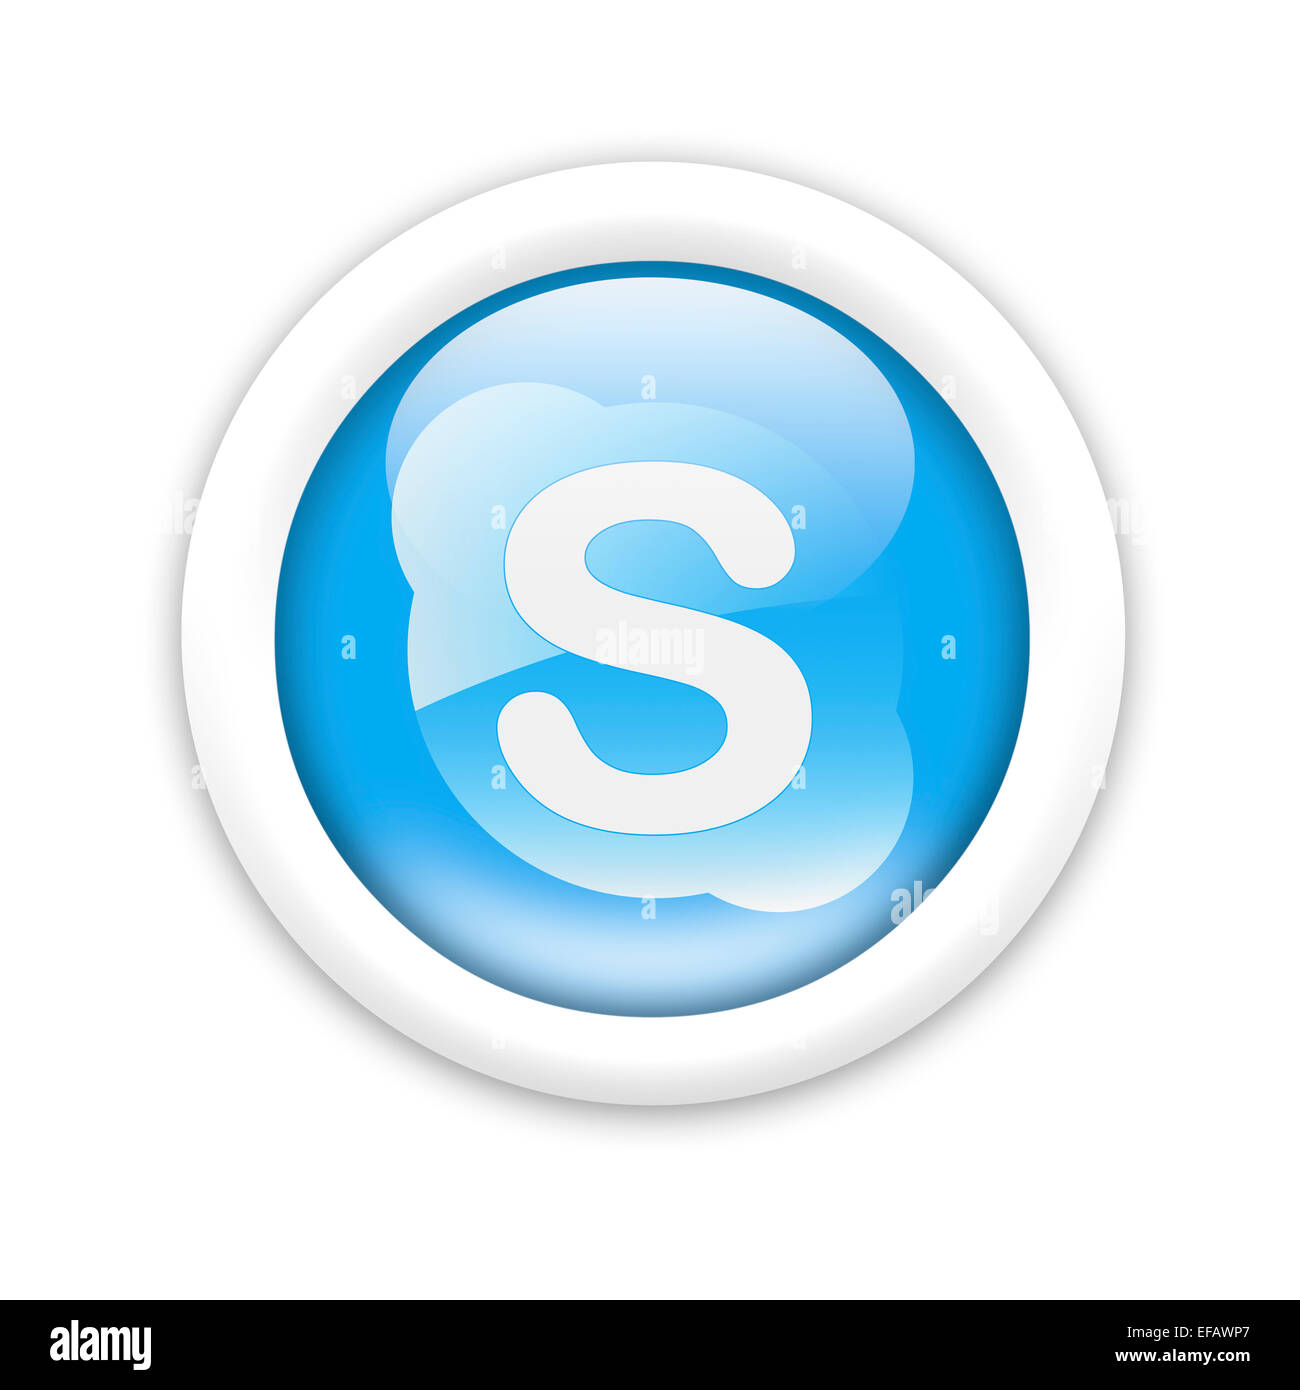 Skype logo icon flag emblem Stock Photo